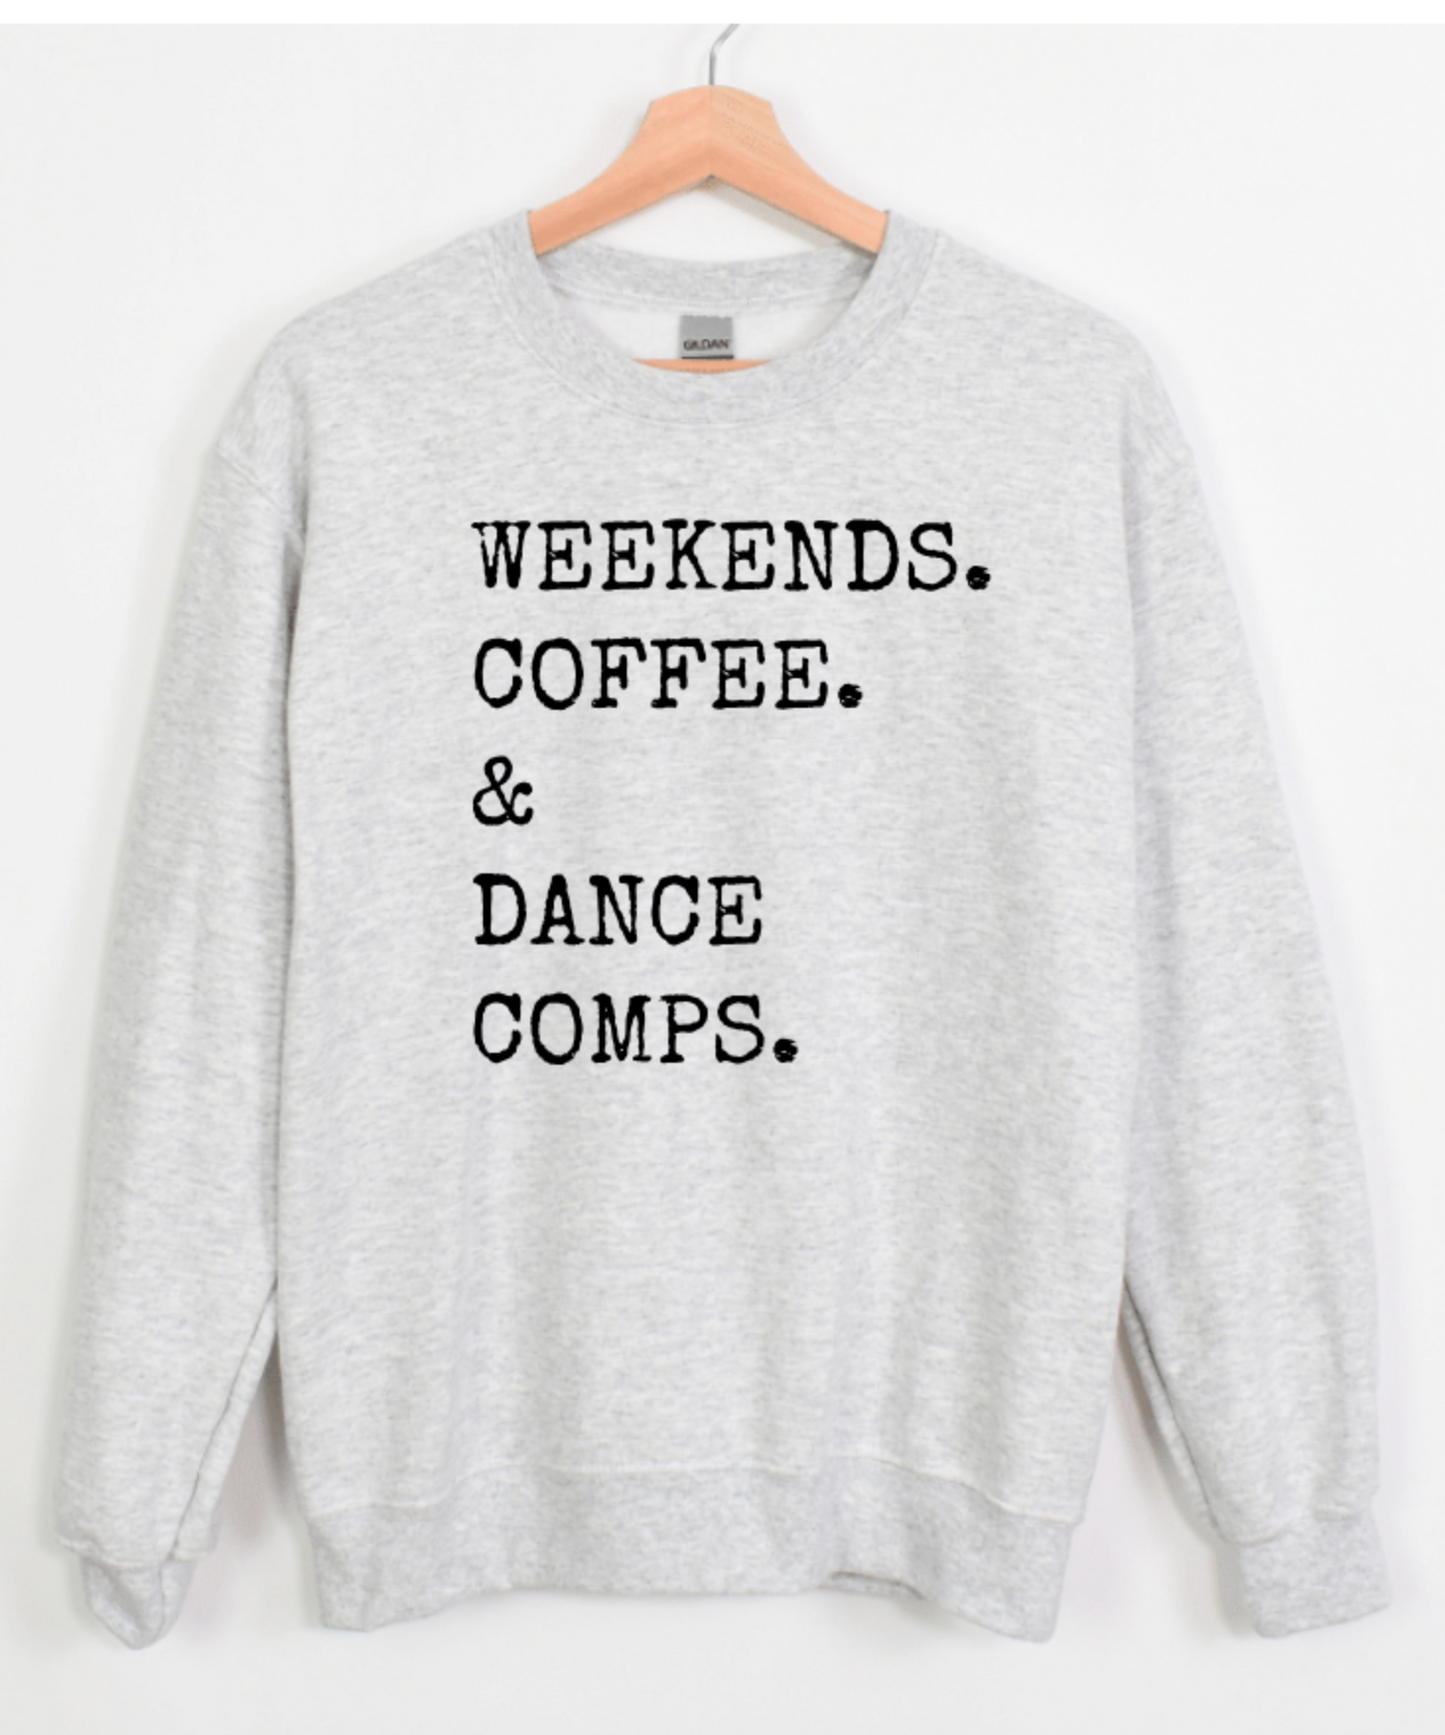 WEEKENDS. COFFEE. & DANCE COMPS.